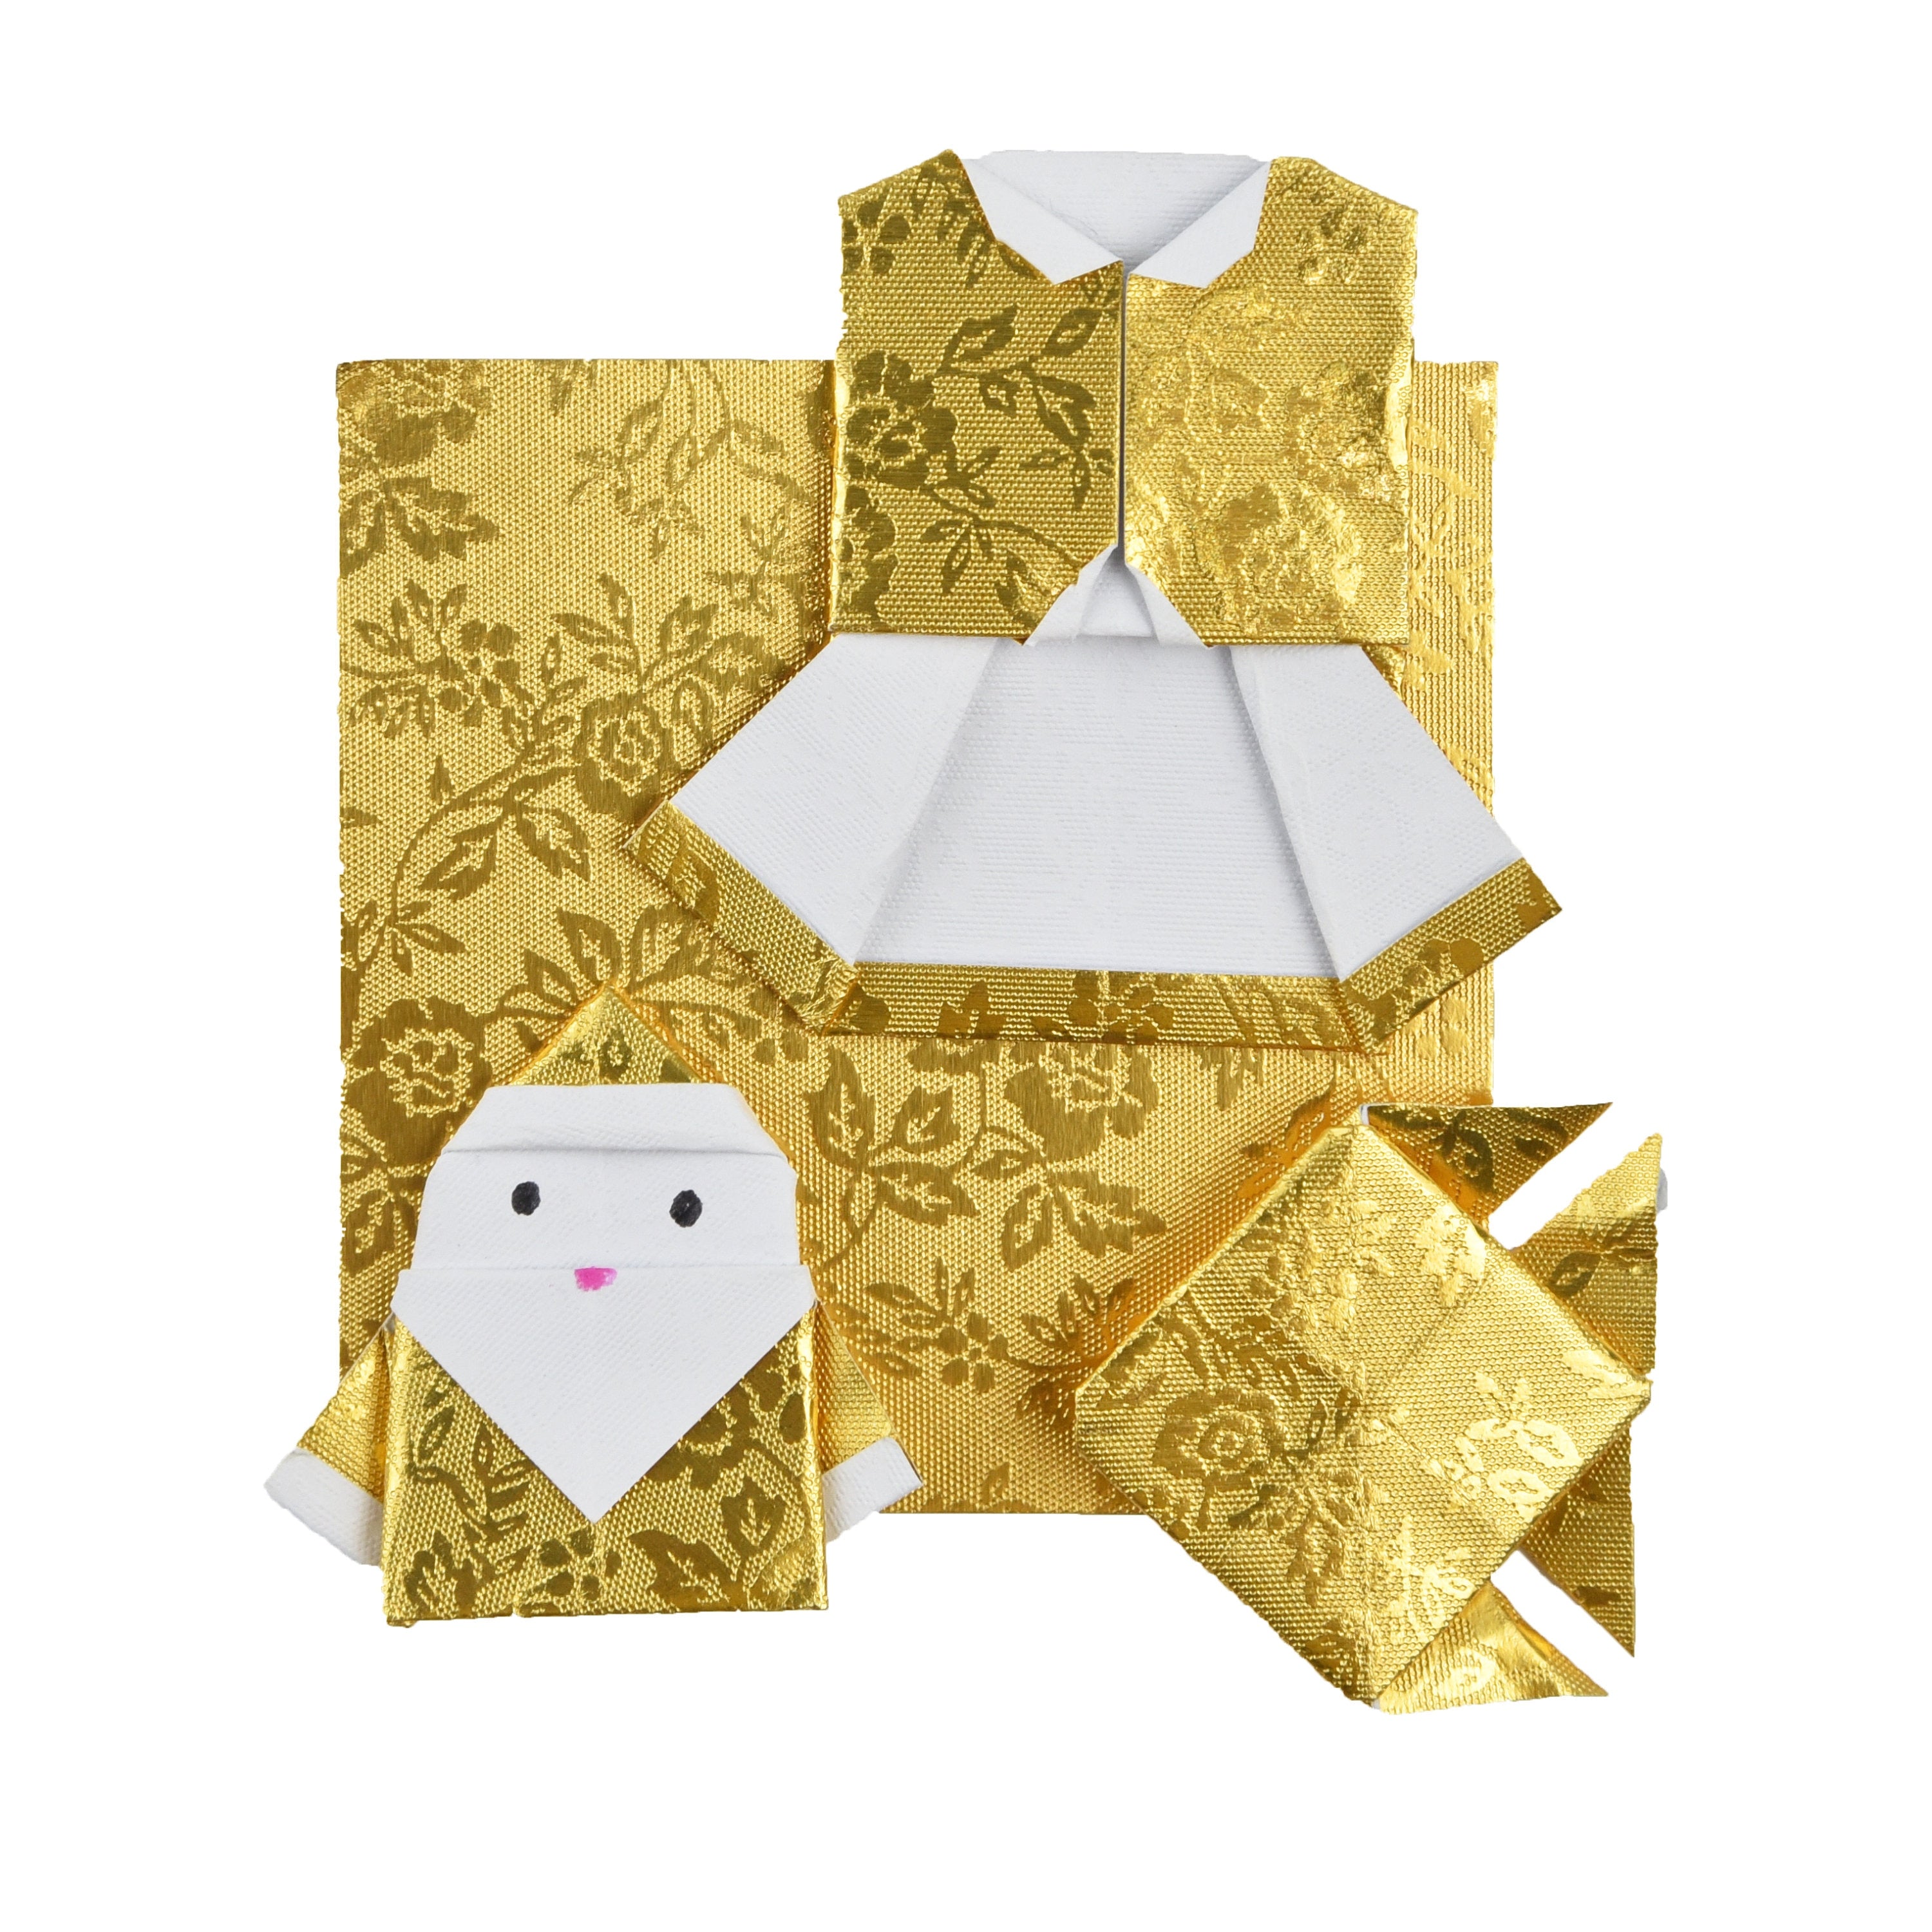 100 hojas de papel de origami dorado - 6x6 pulgadas - para papel plegable, grullas de origami, decoración de origami